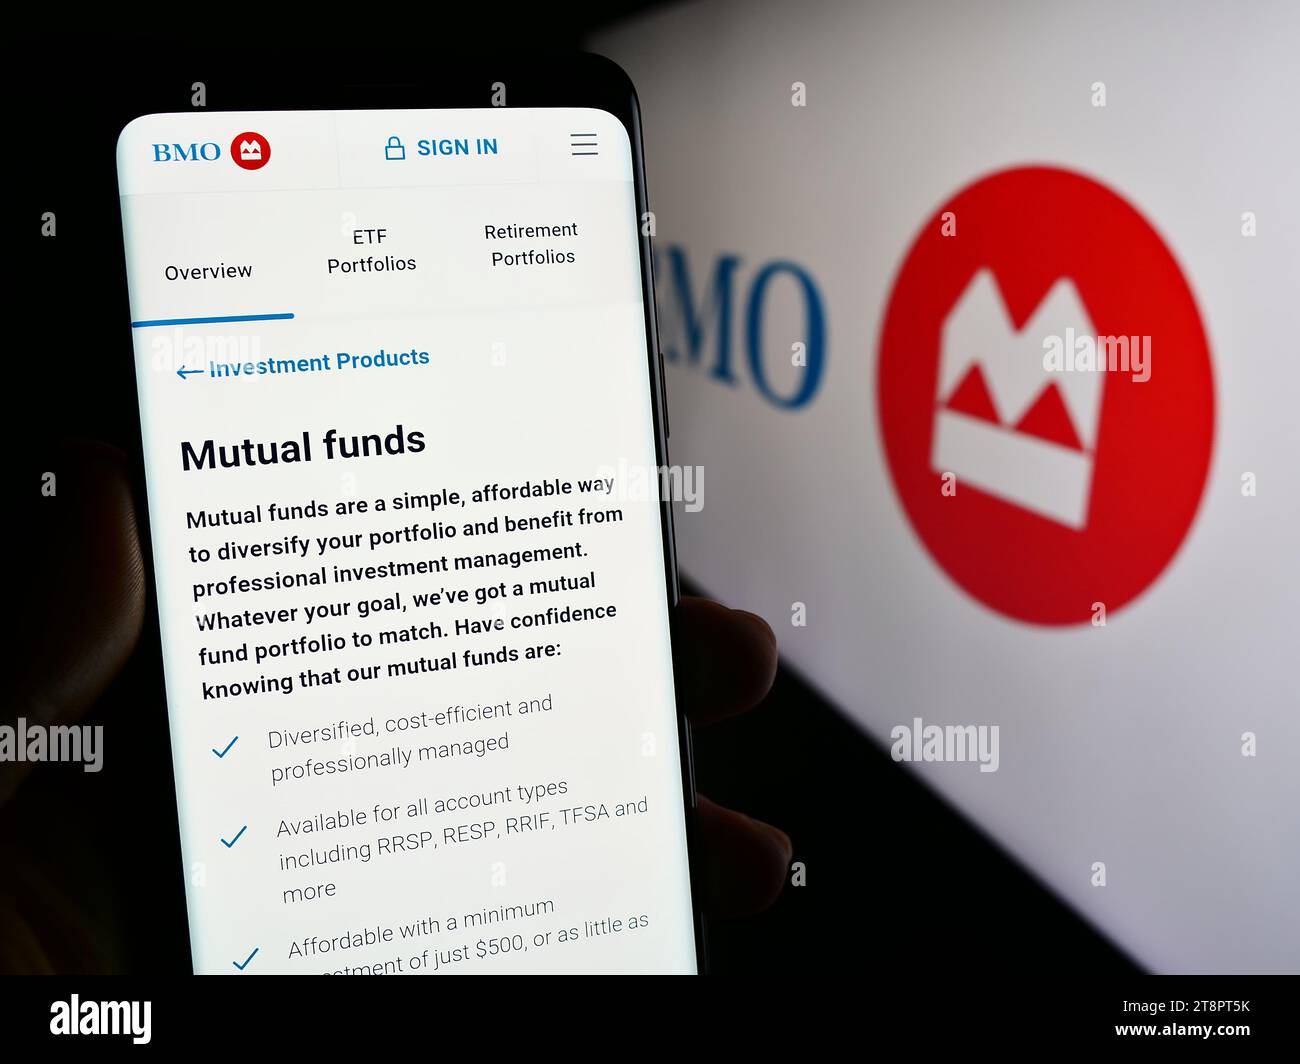 Personne détenant un téléphone intelligent avec une page Web de la société canadienne de services financiers Banque de Montréal (BMO) avec logo. Concentrez-vous sur le centre de l'écran du téléphone. Banque D'Images